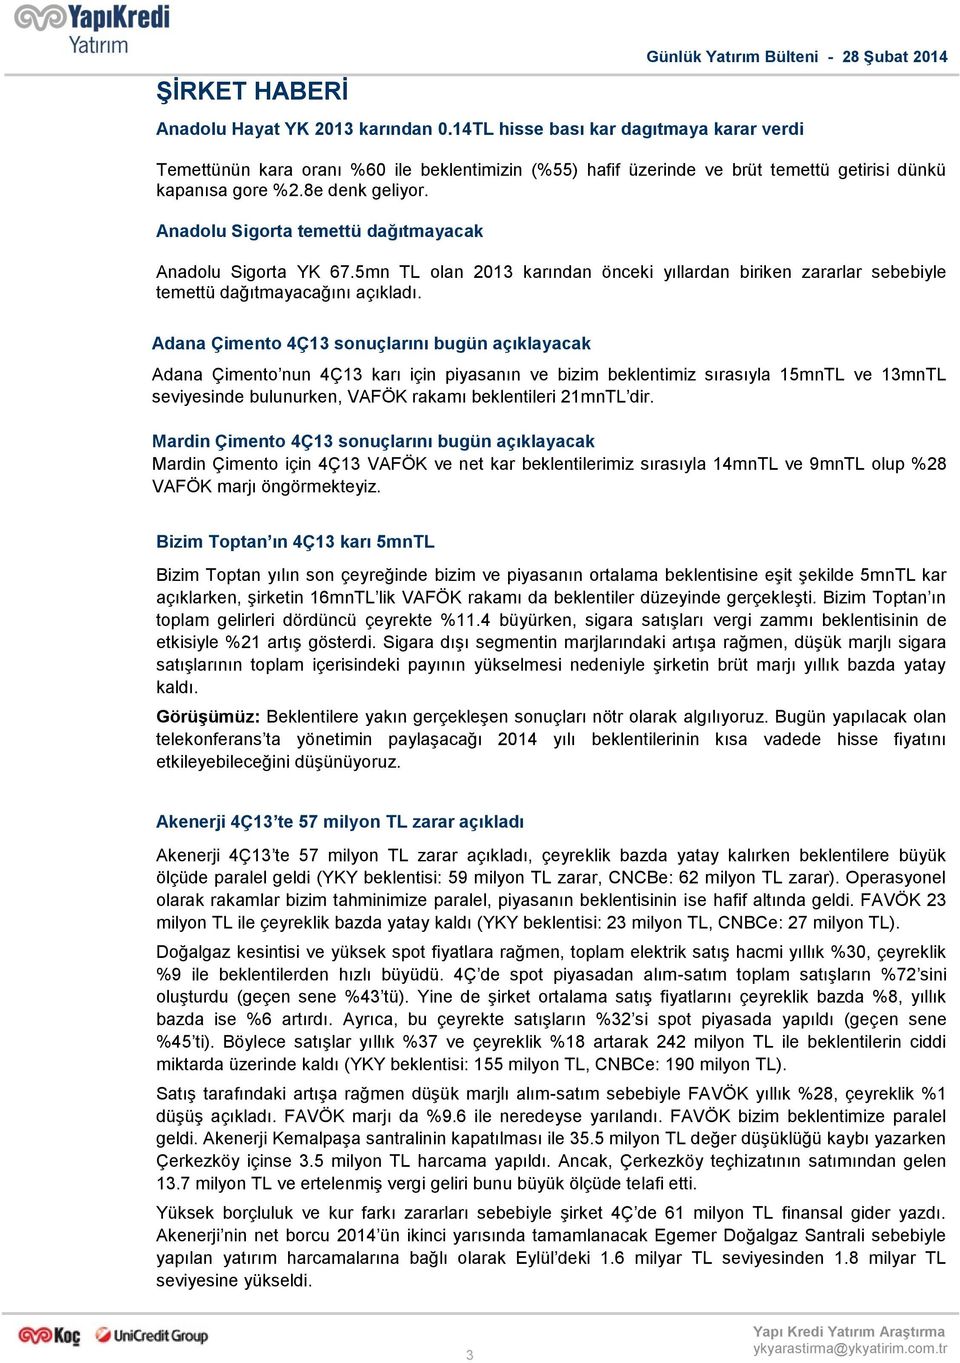 Anadolu Sigorta temettü dağıtmayacak Anadolu Sigorta YK 67.5mn TL olan 2013 karından önceki yıllardan biriken zararlar sebebiyle temettü dağıtmayacağını açıkladı.